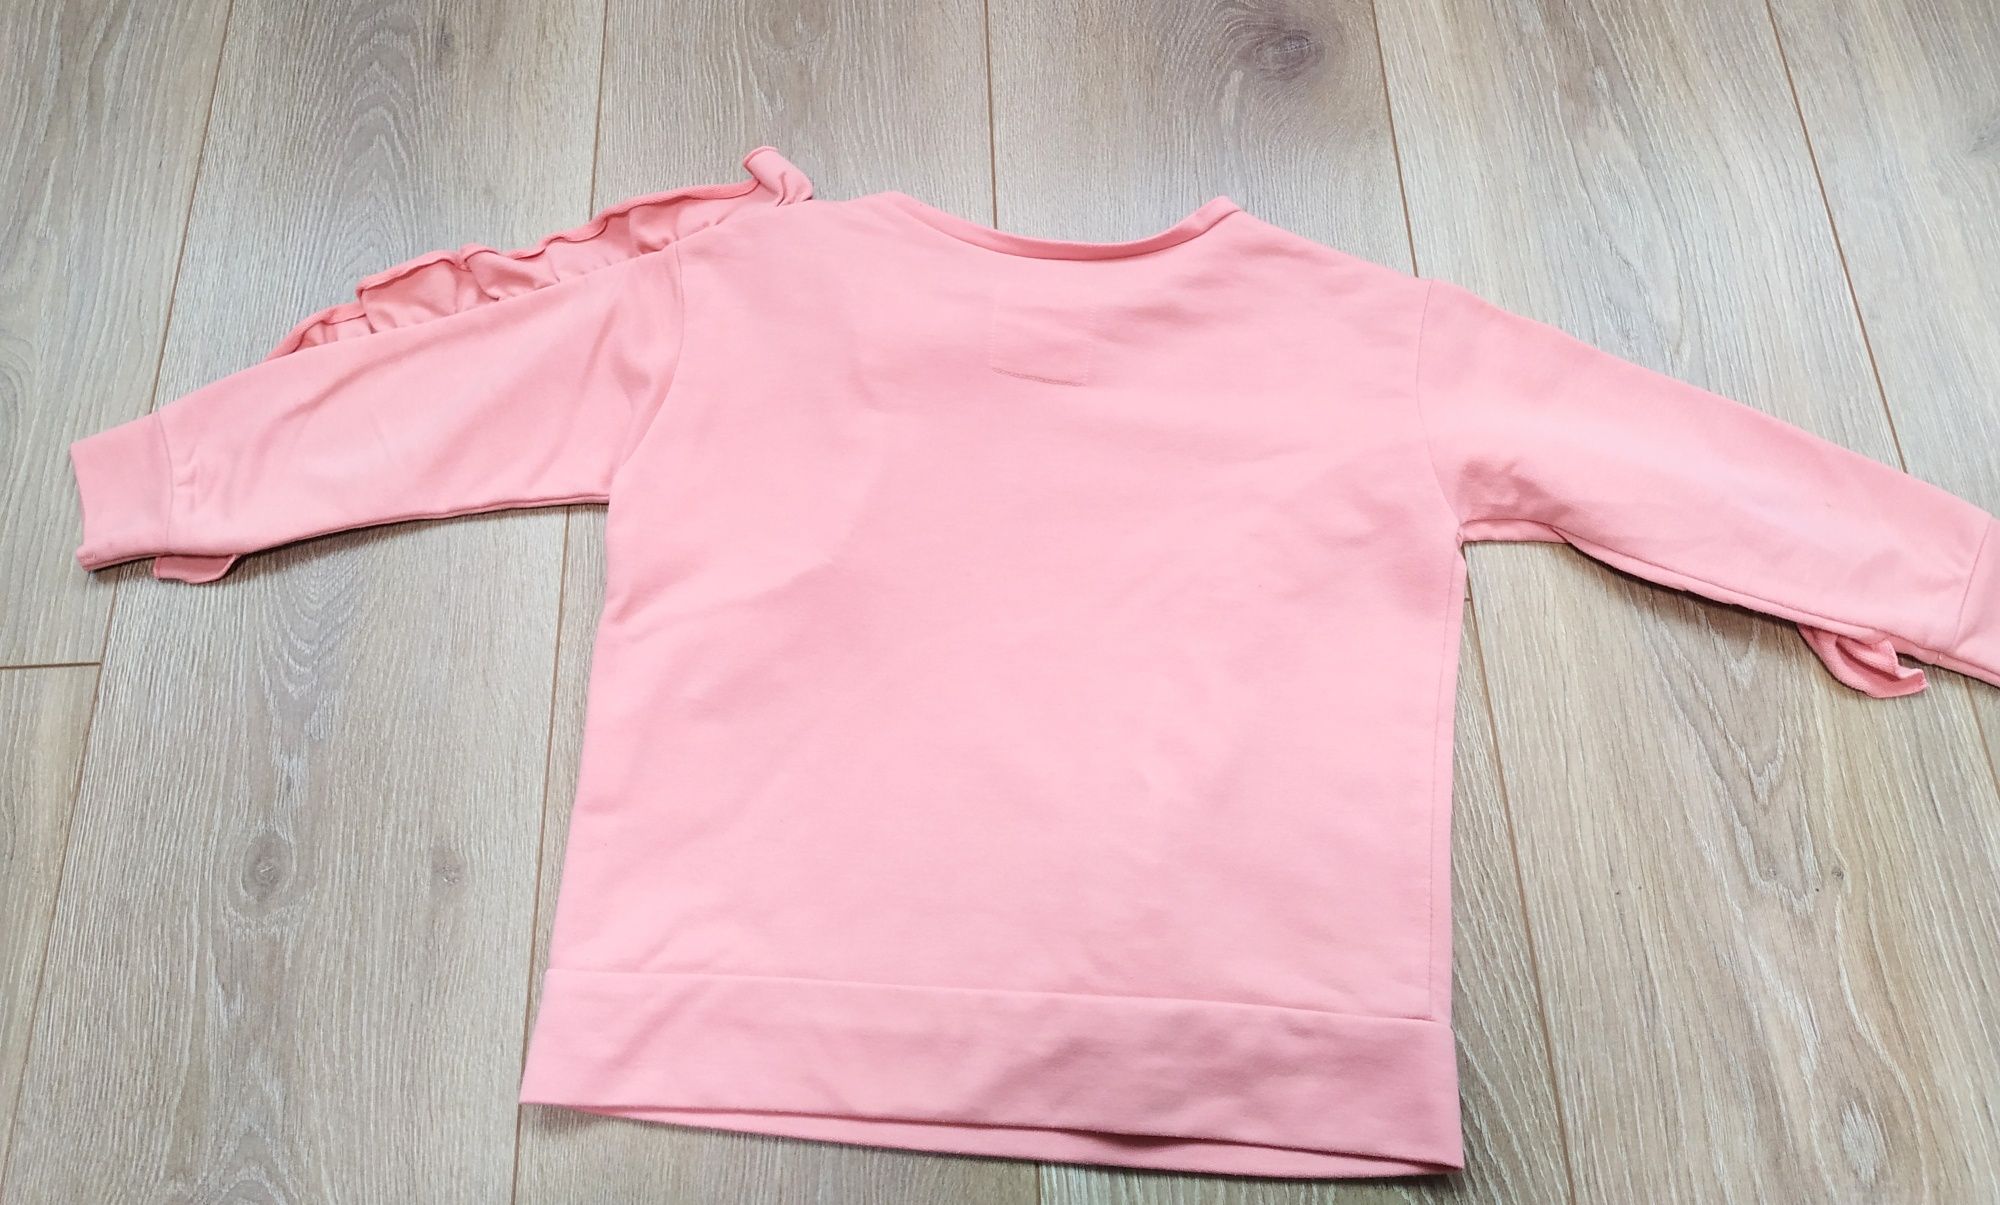 Нежно розовый реглан/кофта с рюшами.Весенний свитер для девочки 110 см